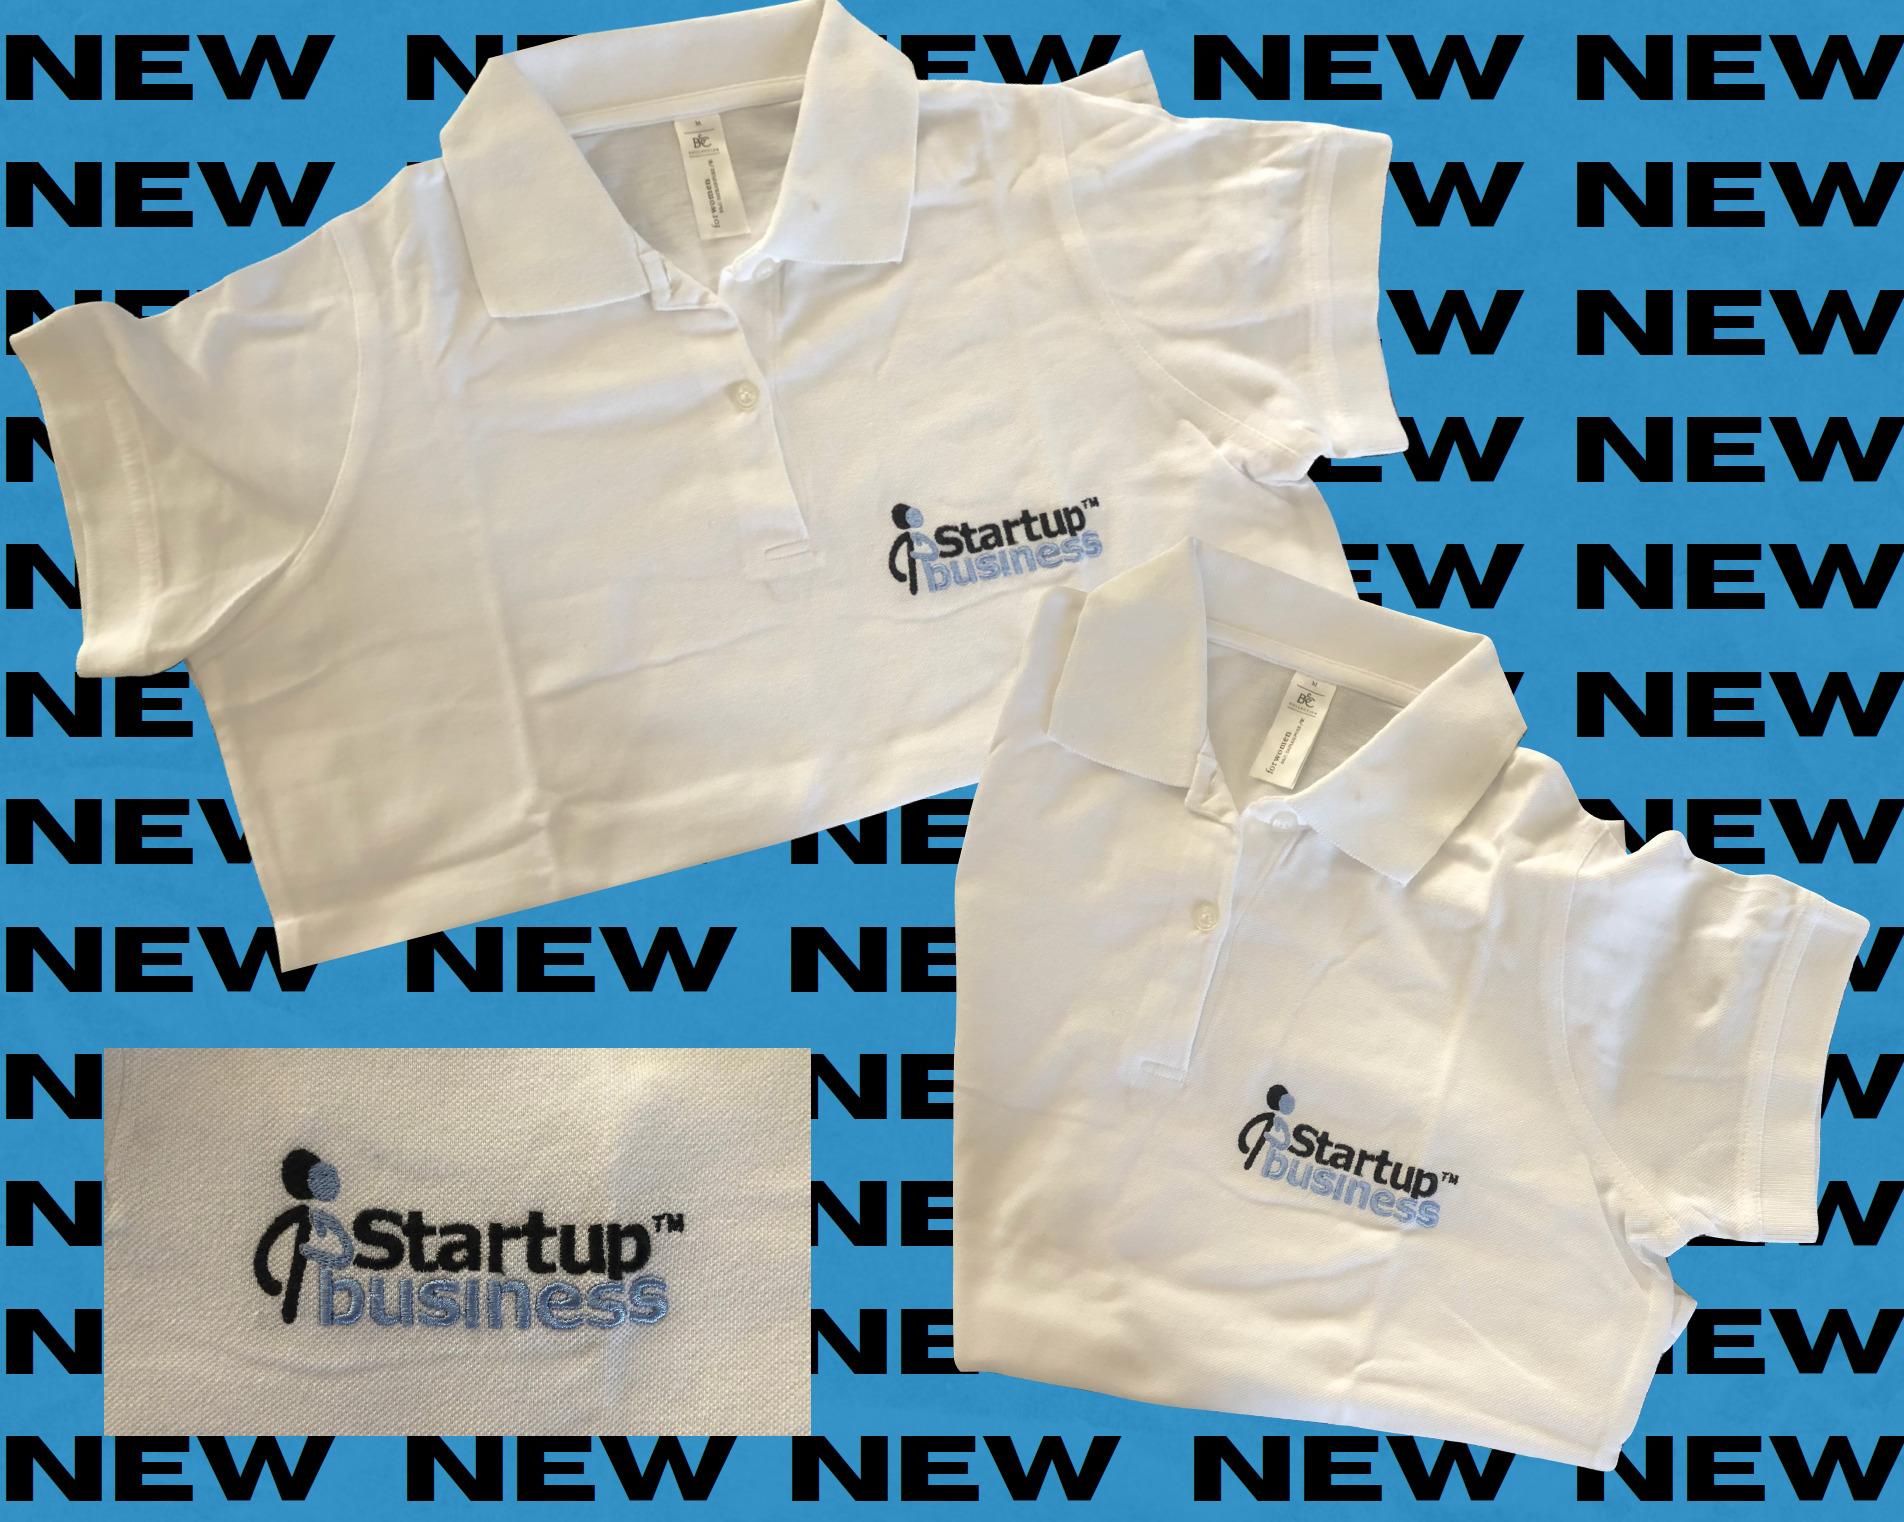 Il nuovo sito di Startupbusiness